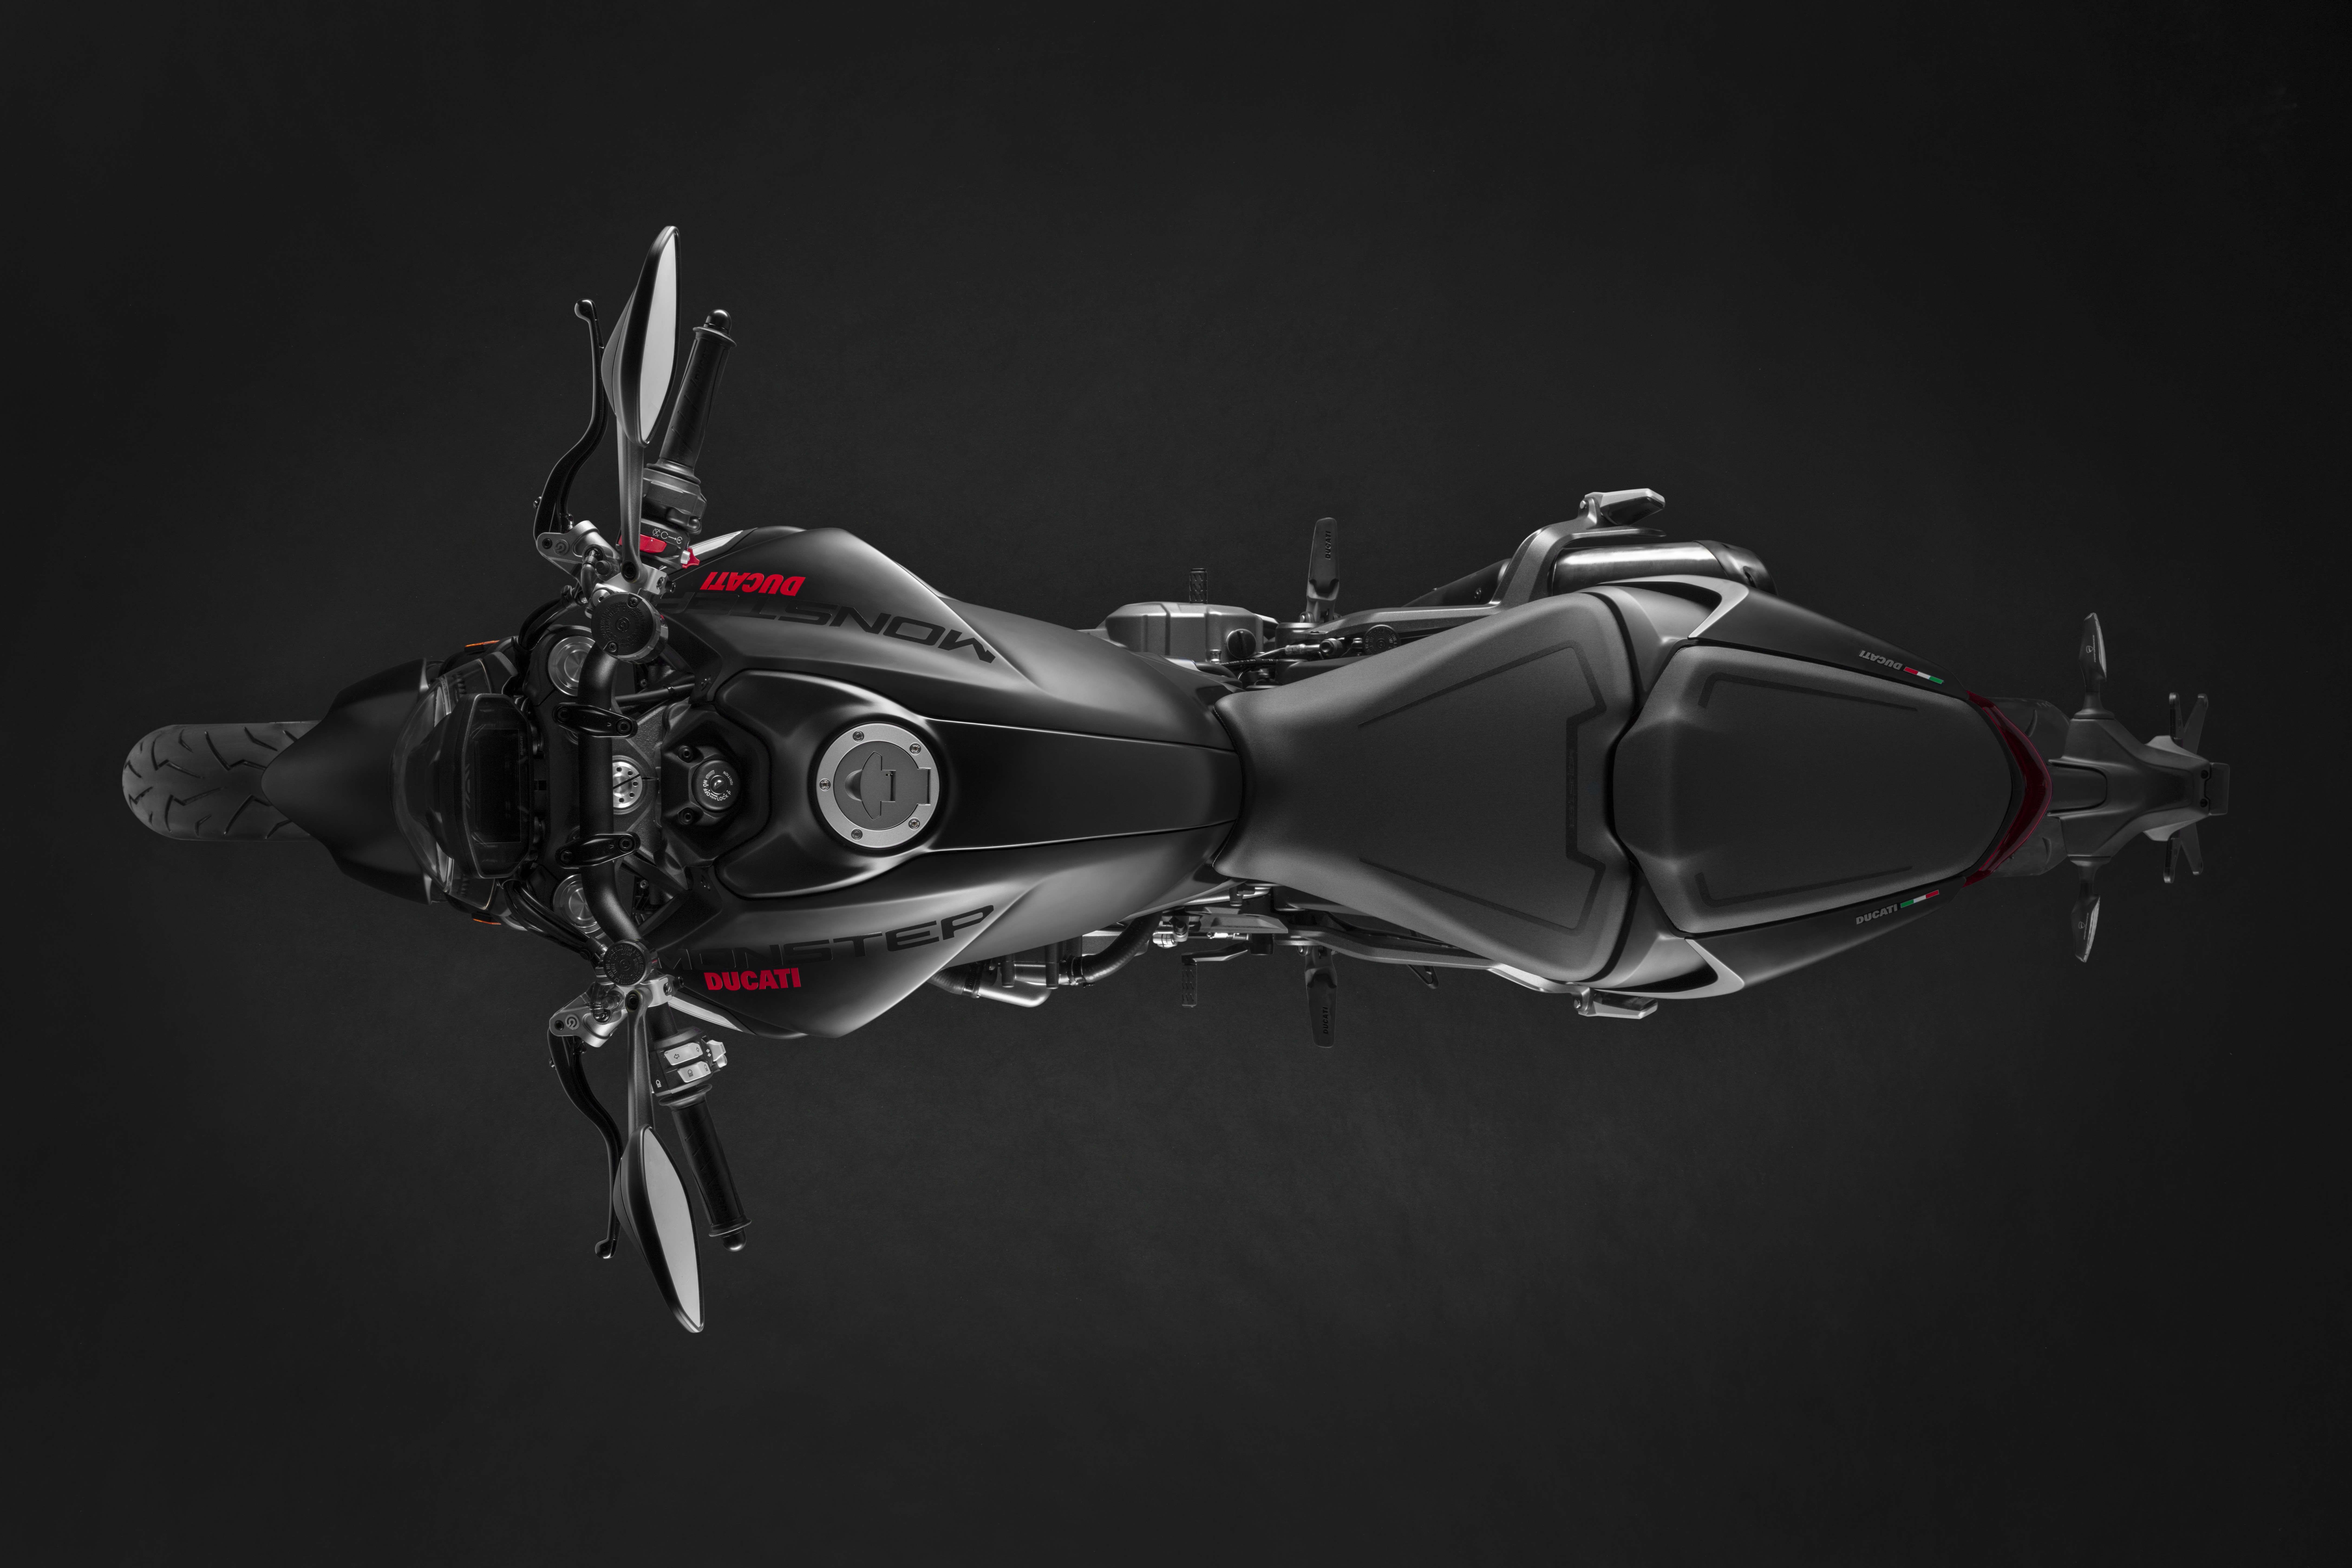 2021 - 2022 Ducati Monster